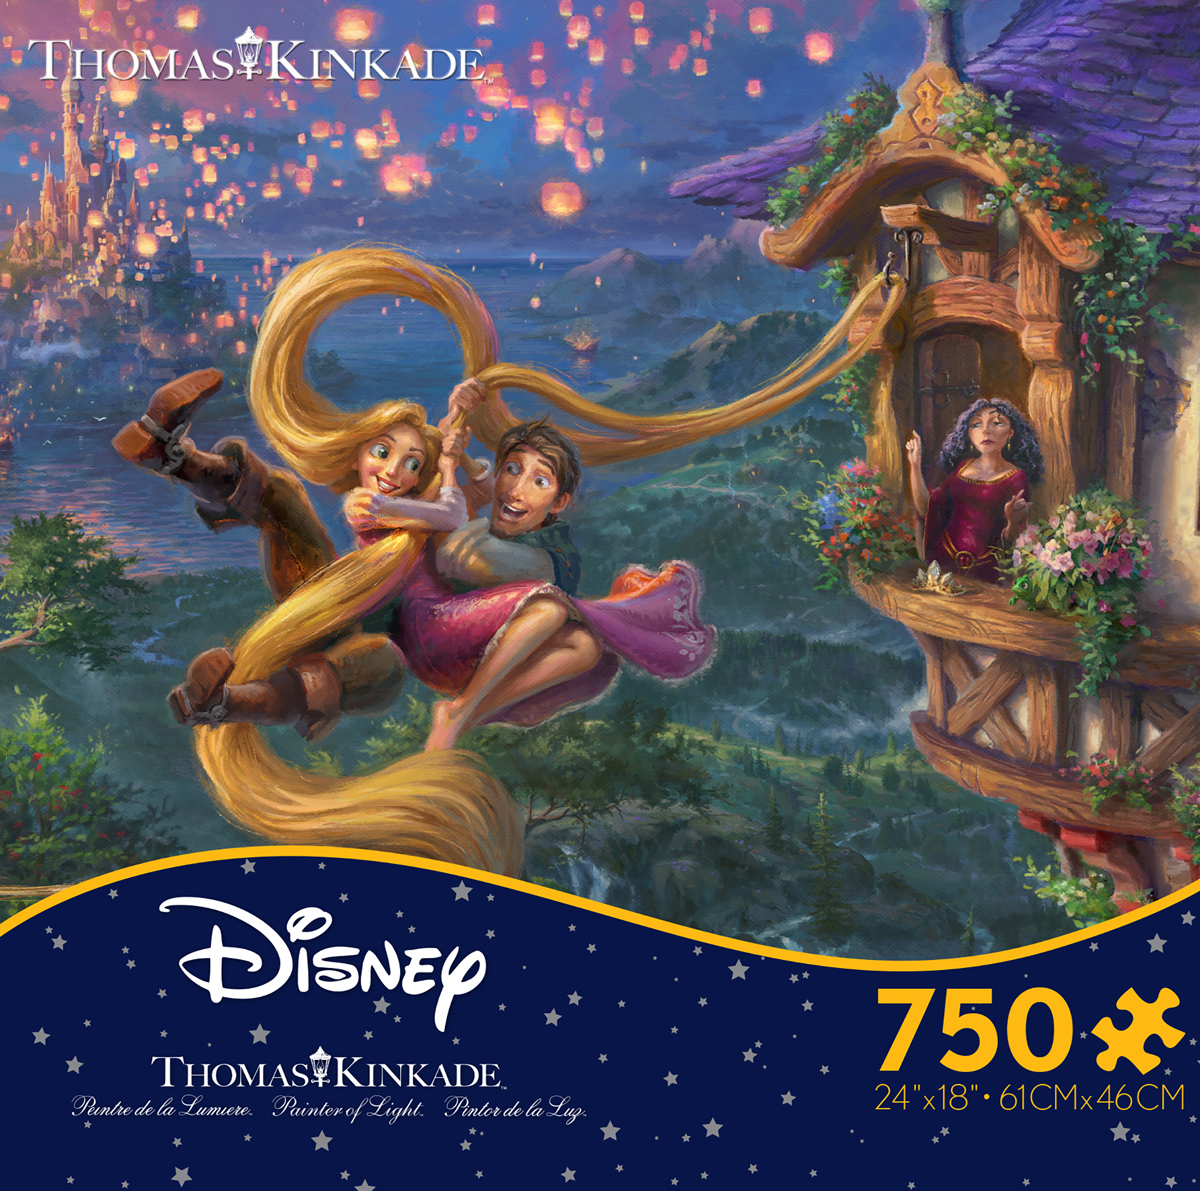 Thomas Kinkade Disney - Tangled Up In Love